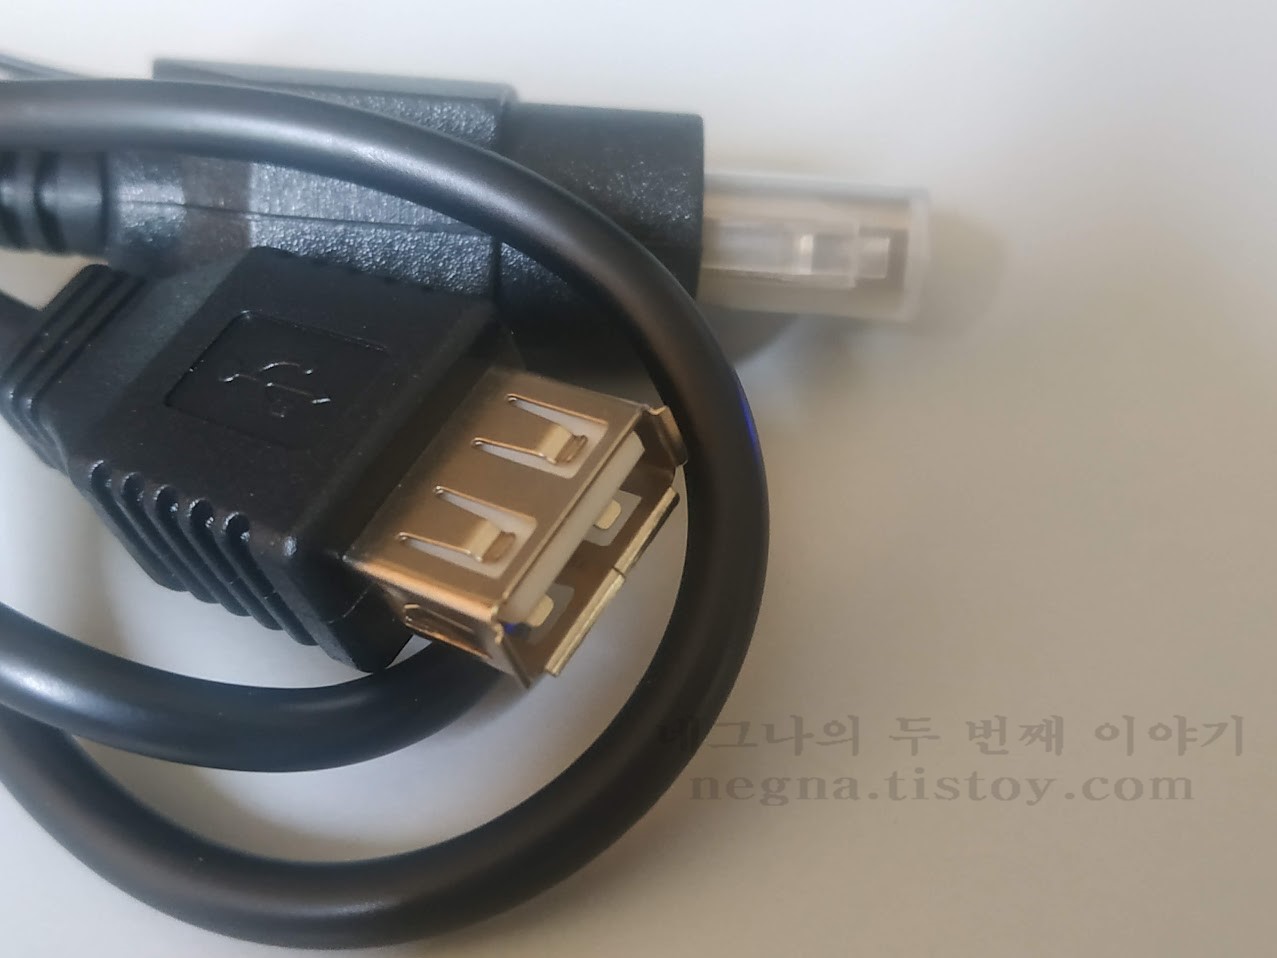 엑스박스 USB 케이블 USB A 포트